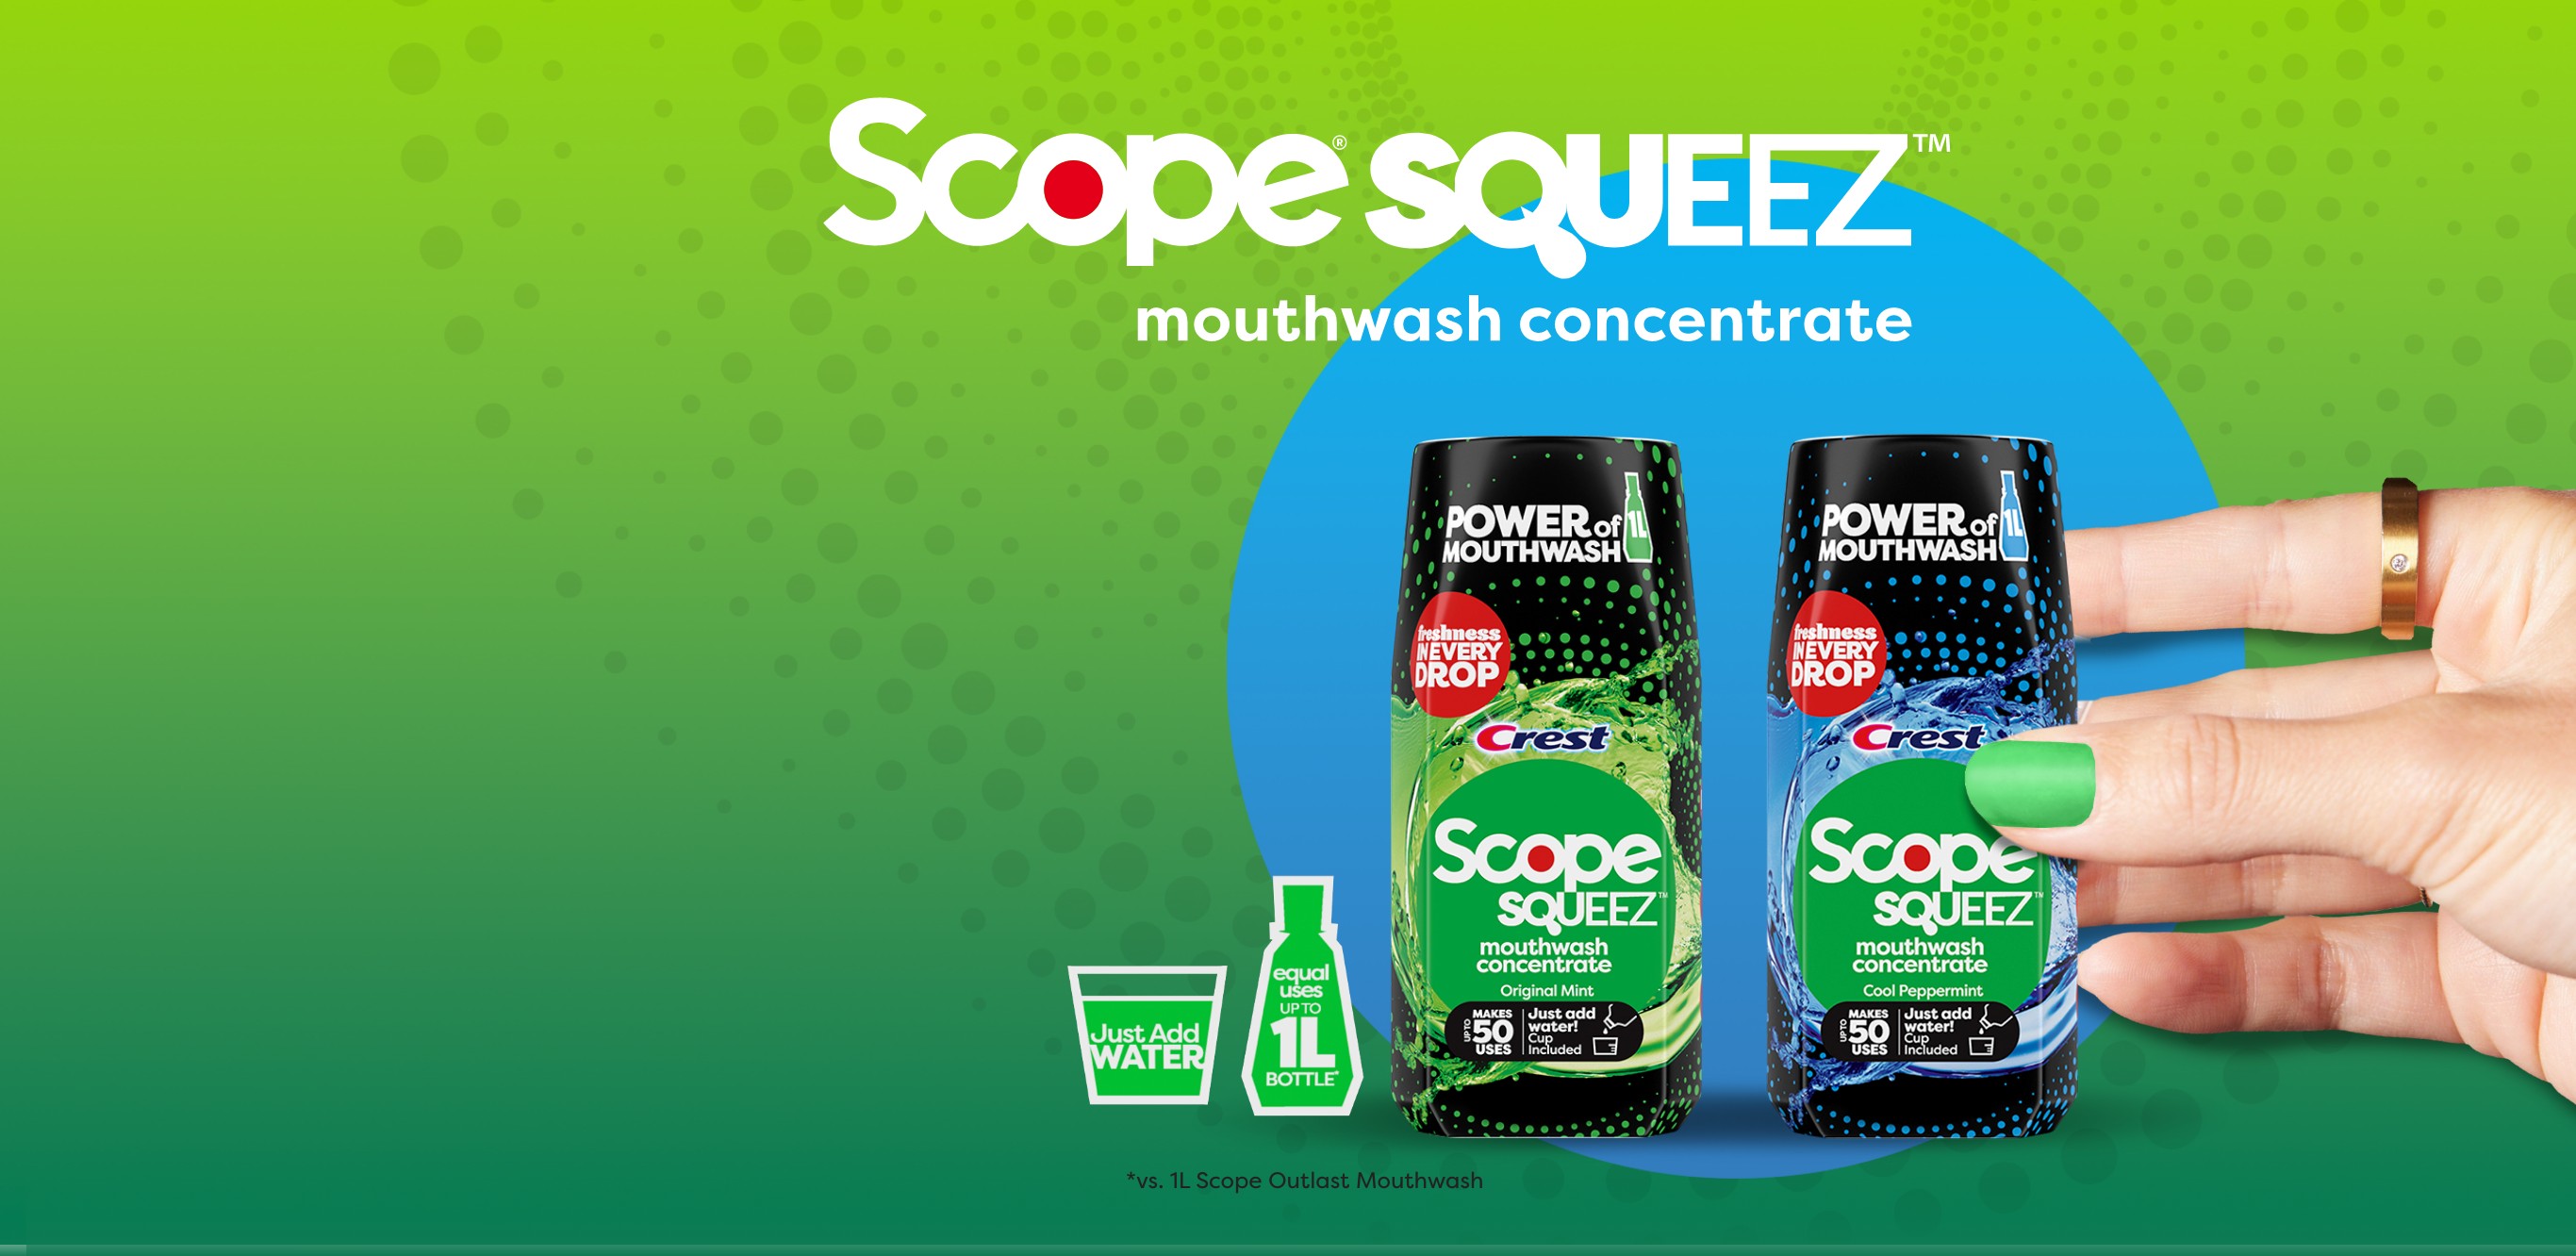 Scope Sqeeze Mouthwash concrete